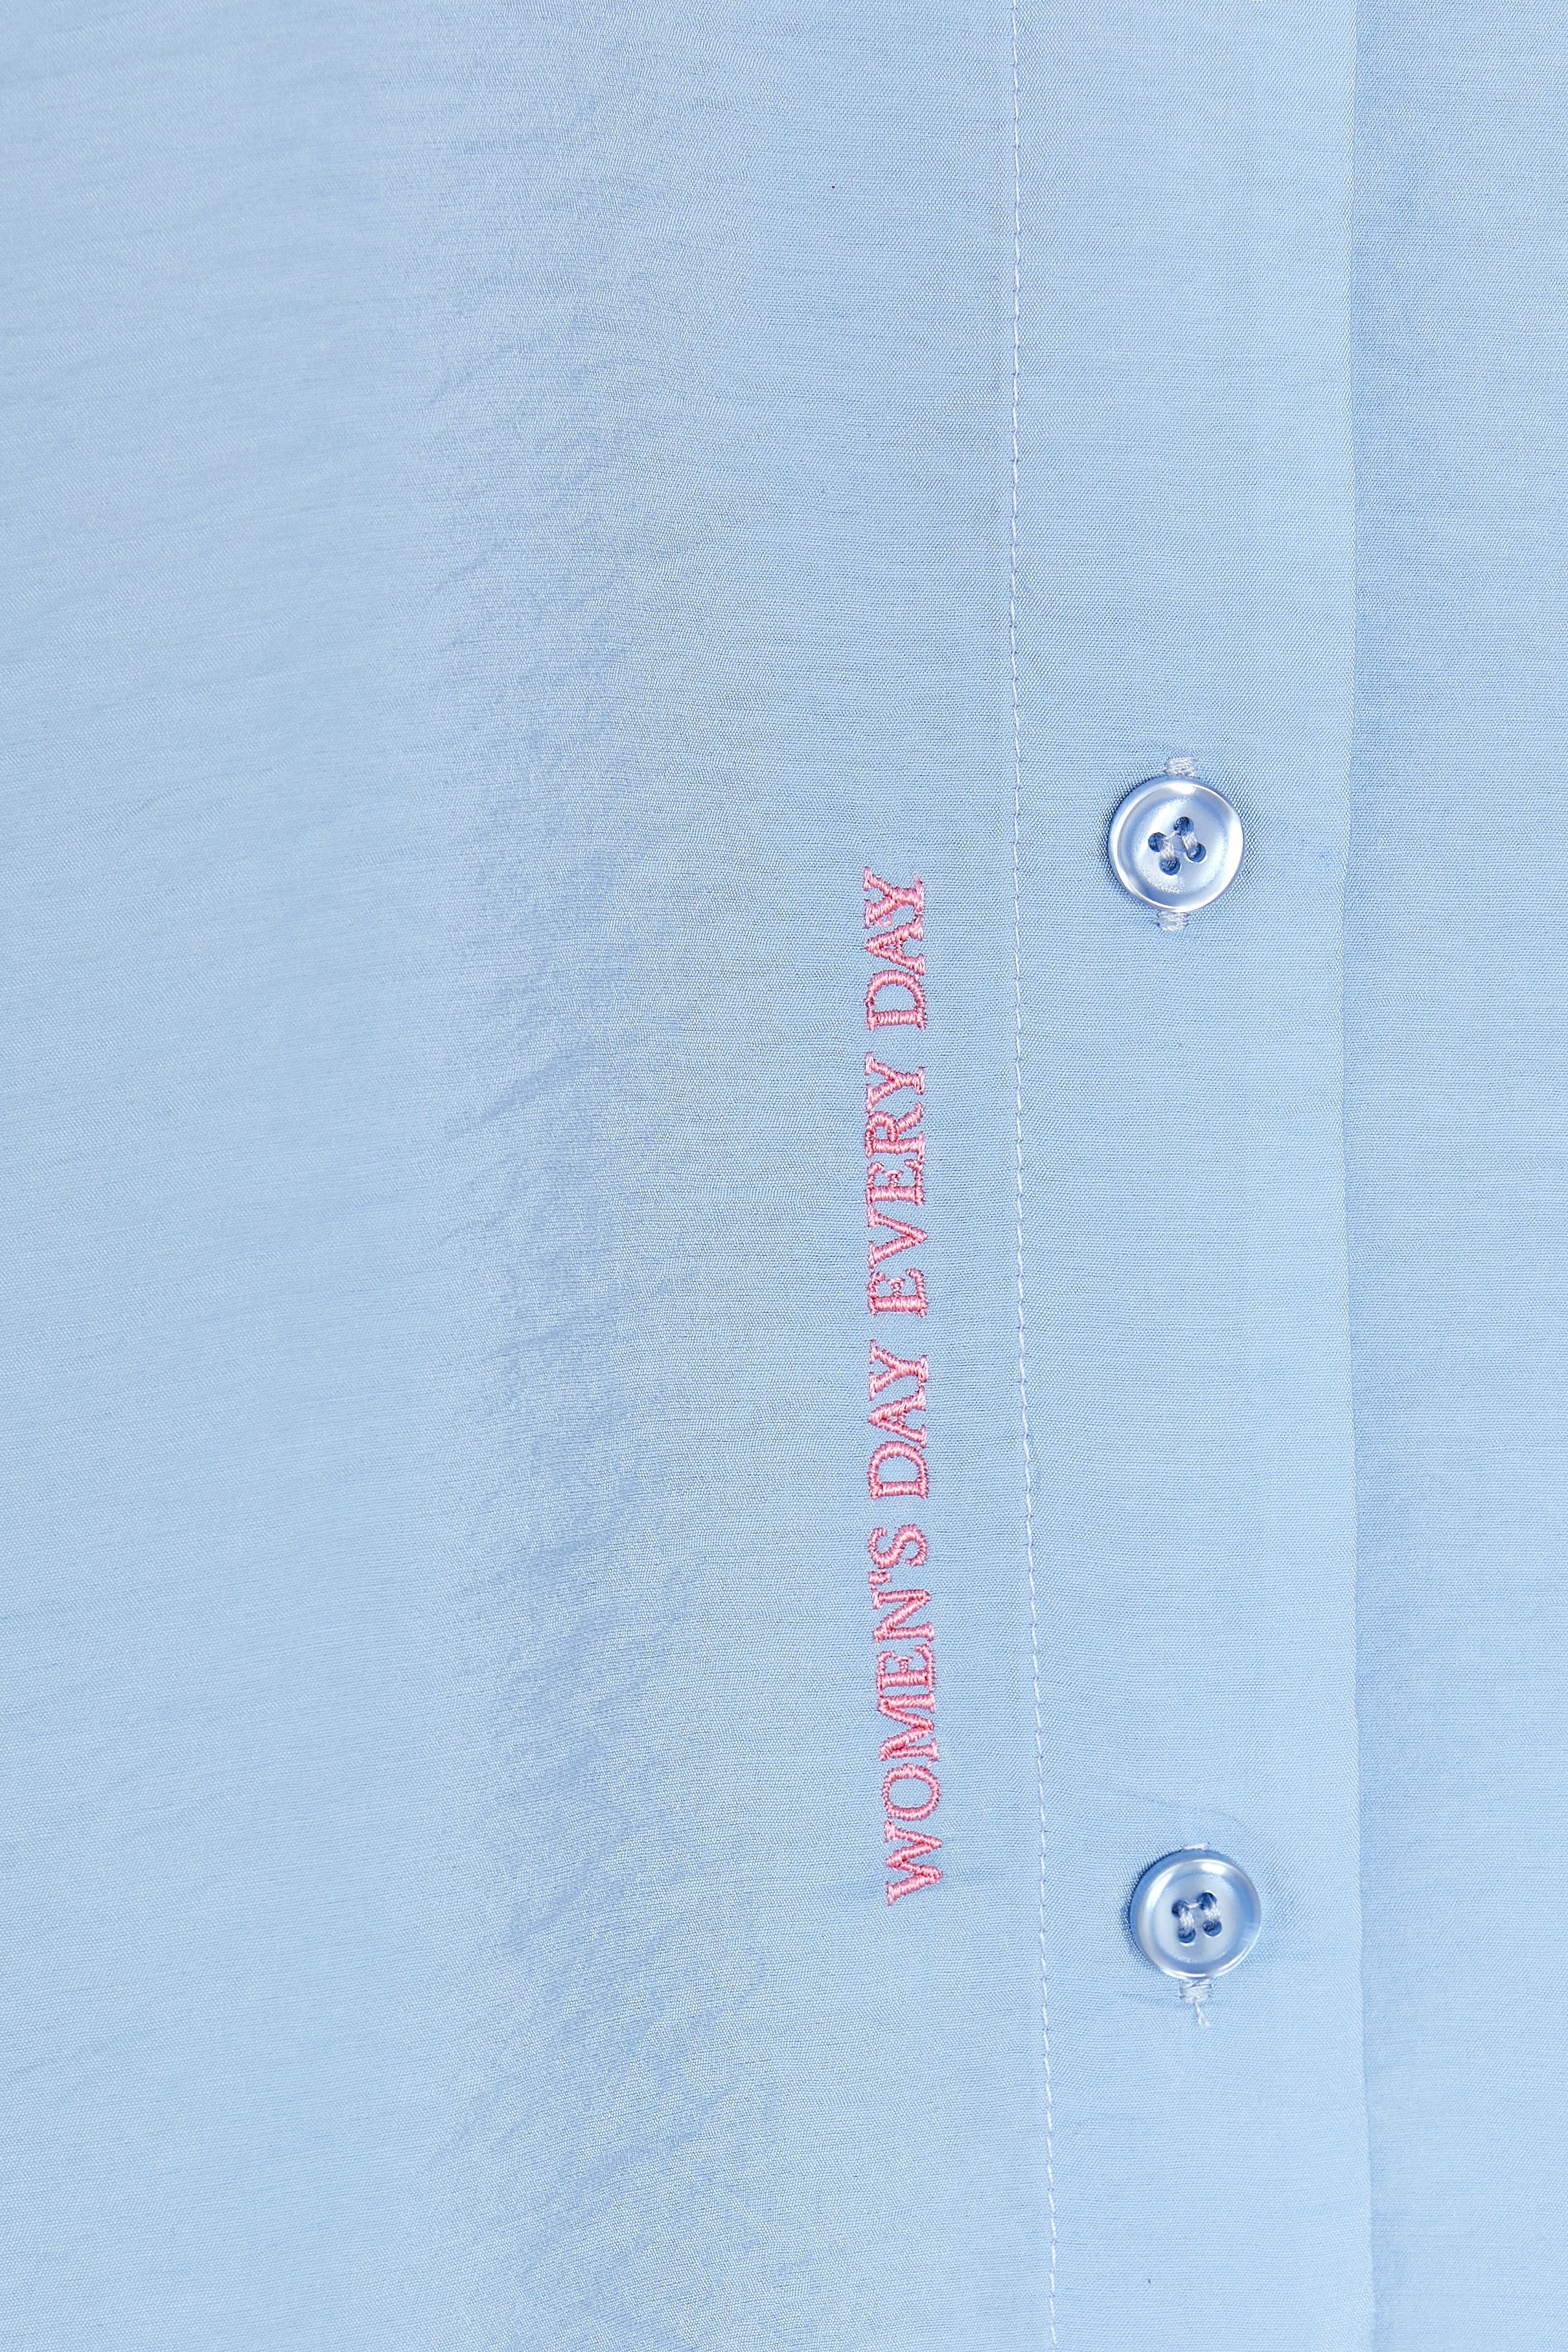 CKS Dames - WAZNA - blouse short sleeves - light blue